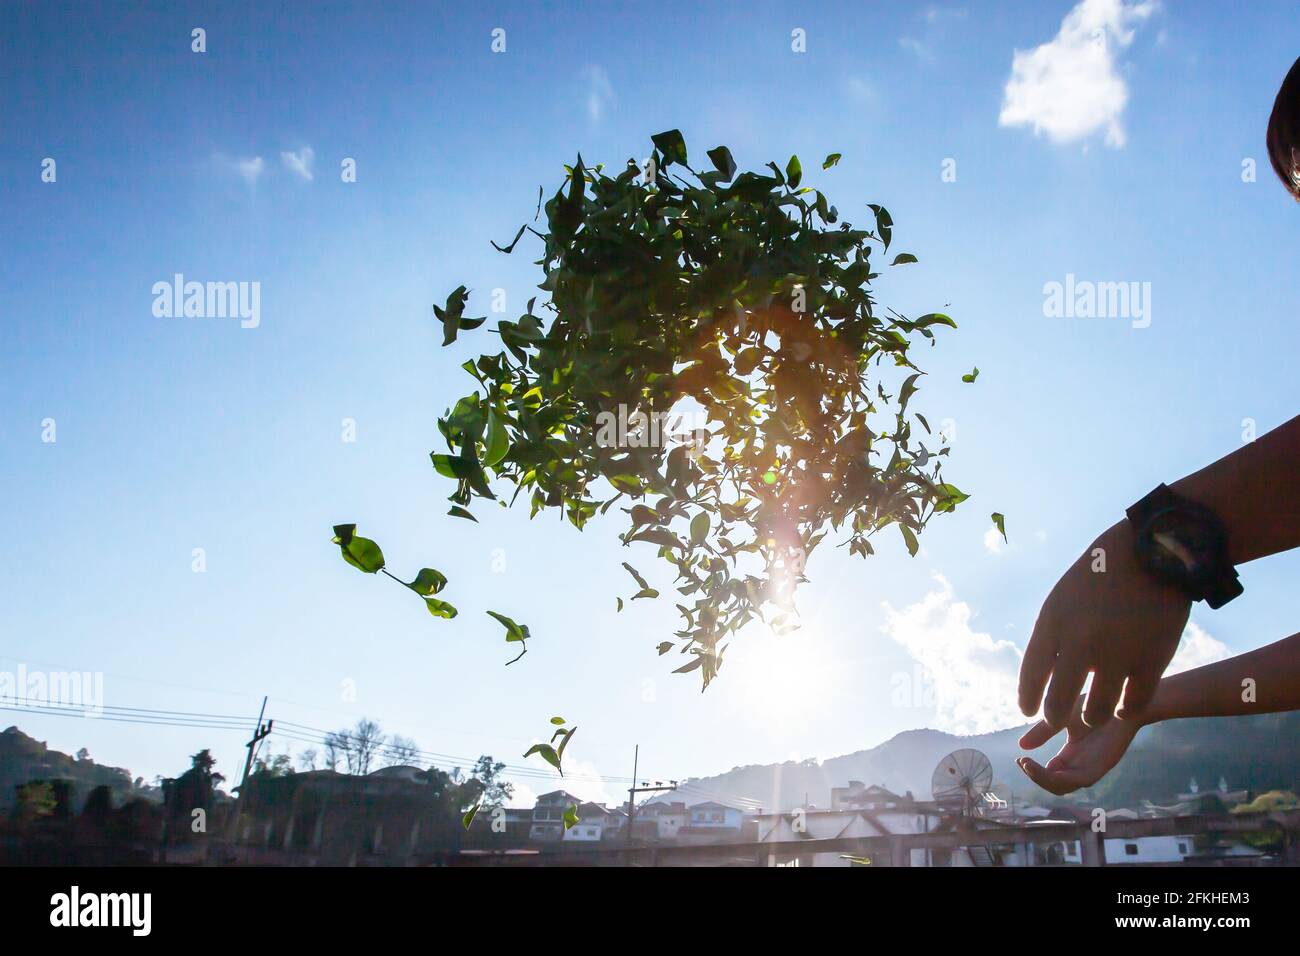 Un coltivatore di tè appassendo le foglie alla luce del sole e lasciato appassire, la prima fase di lavorazione dopo che le foglie sono raccolte. Doi Mae Salong, Thailandia. Foto Stock